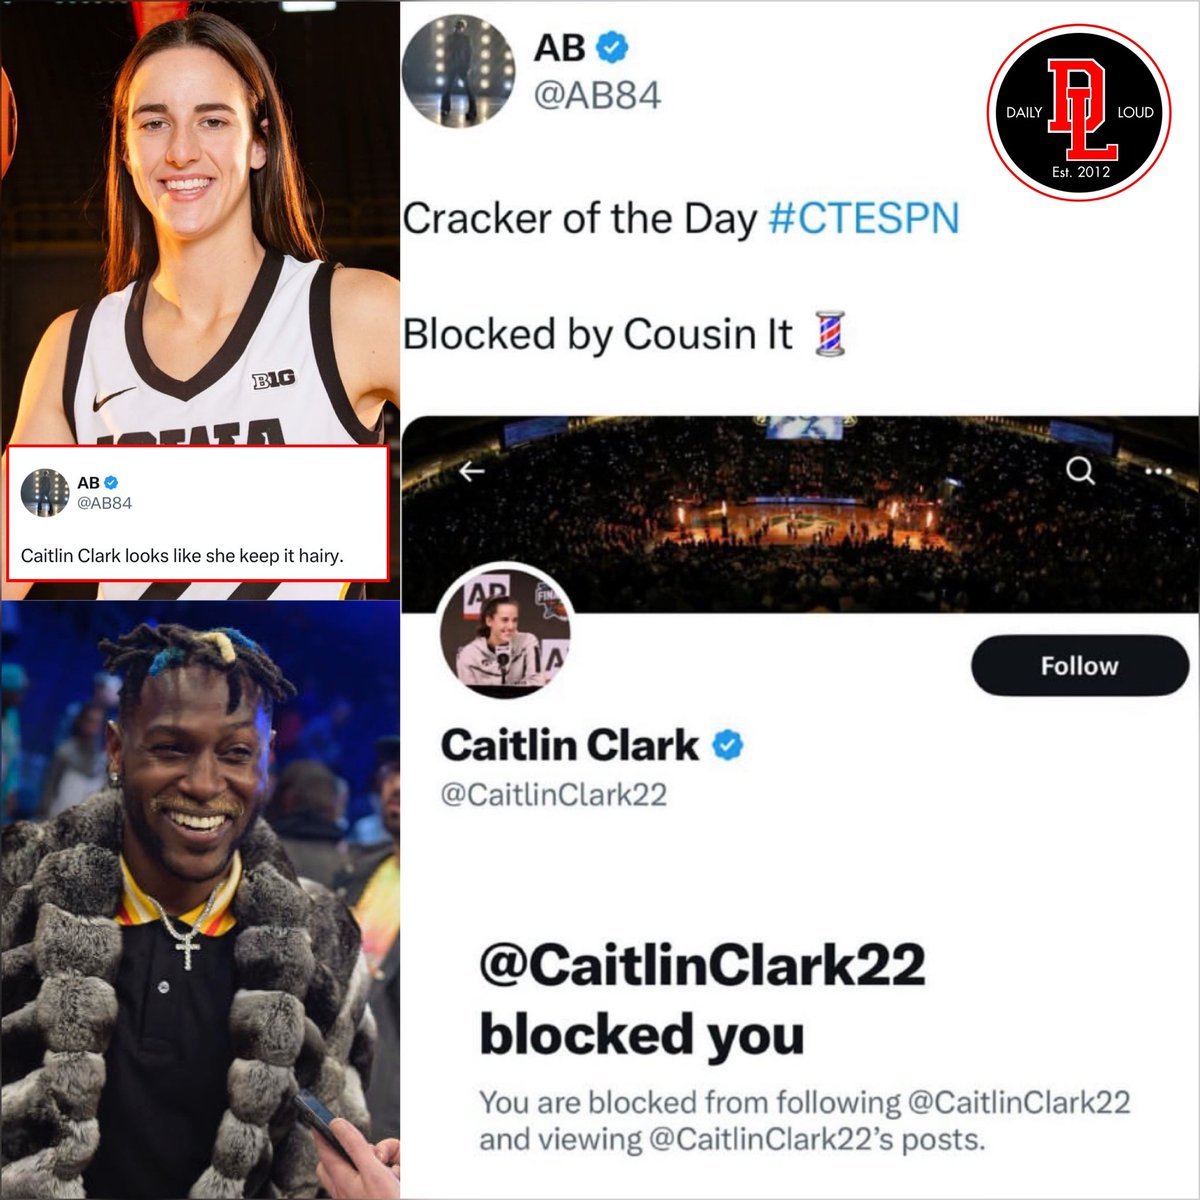 Caitlin Clark blocks Antonio Brown after he said: “Caitlin Clark looks like she keep it hairy”